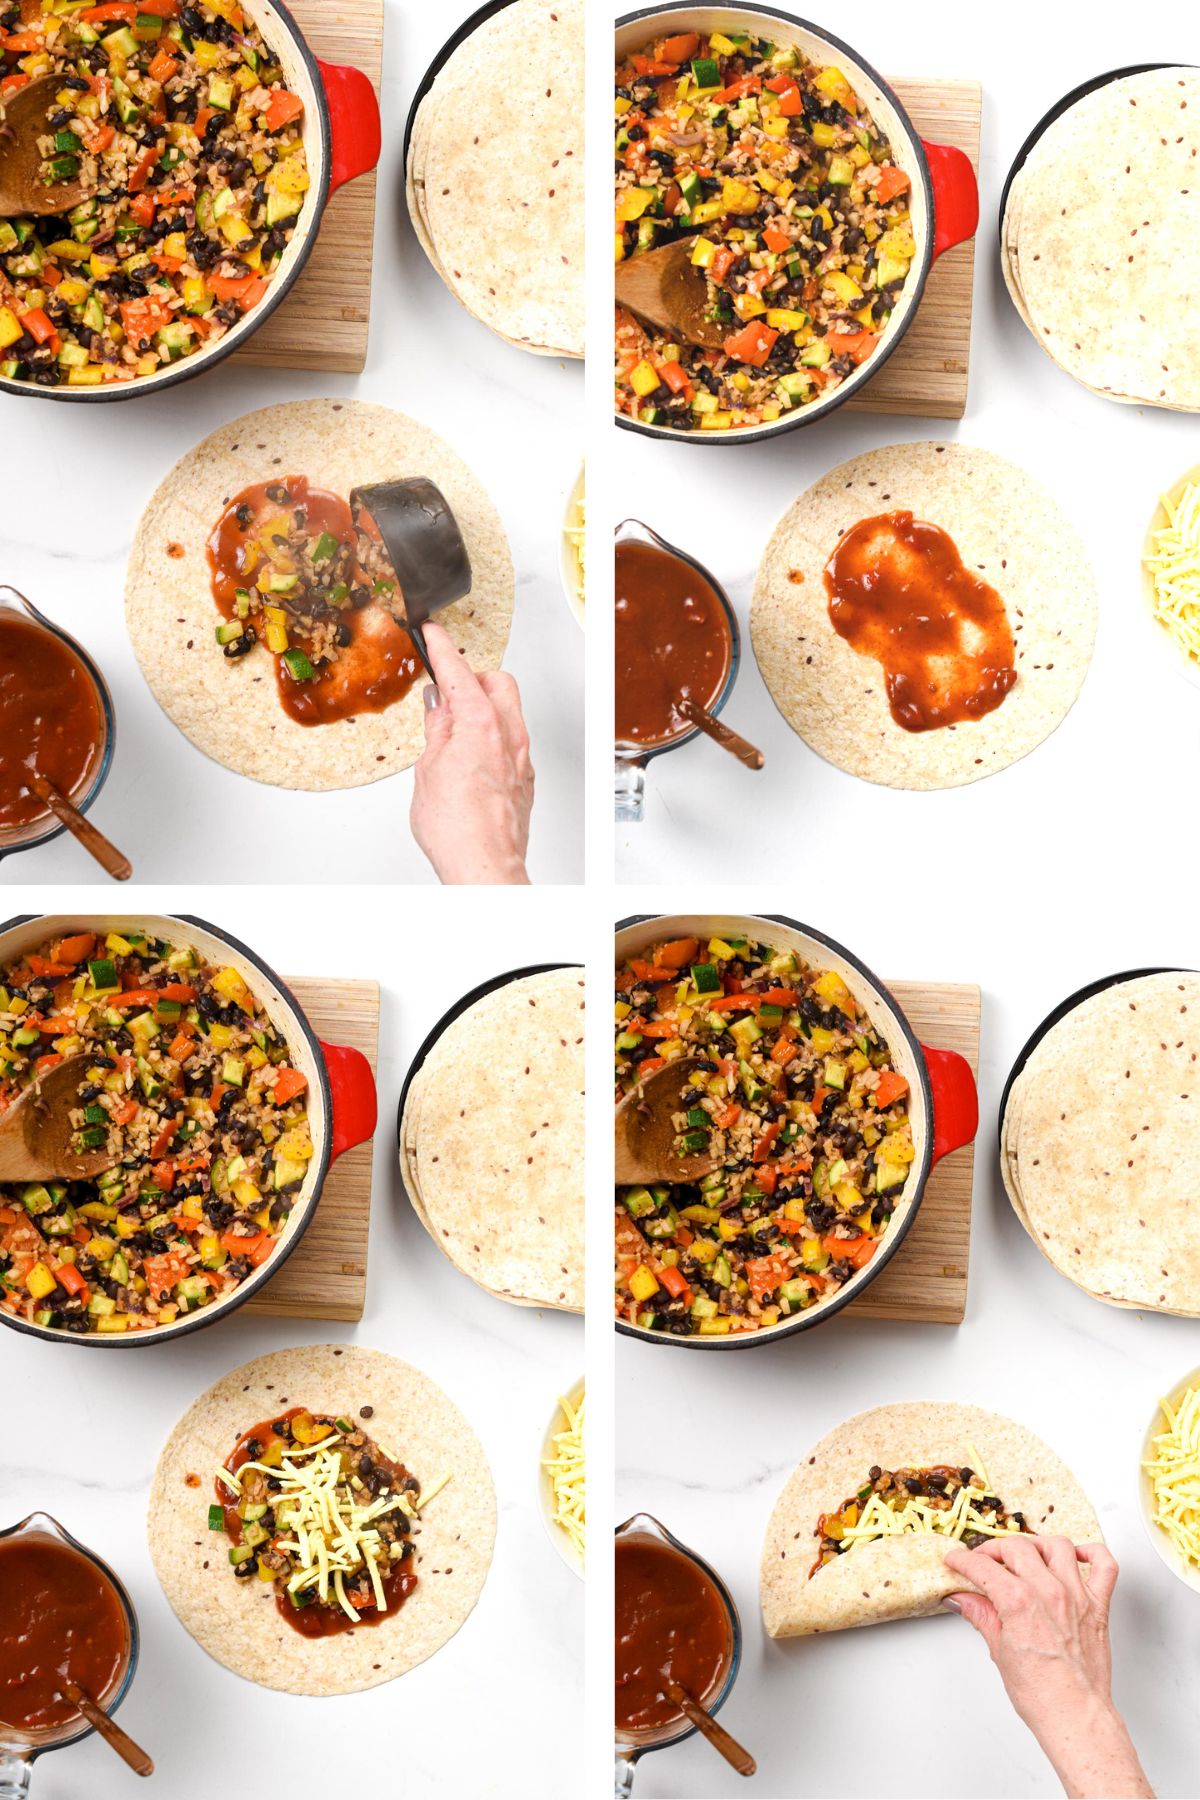 How to make Vegan Enchiladas